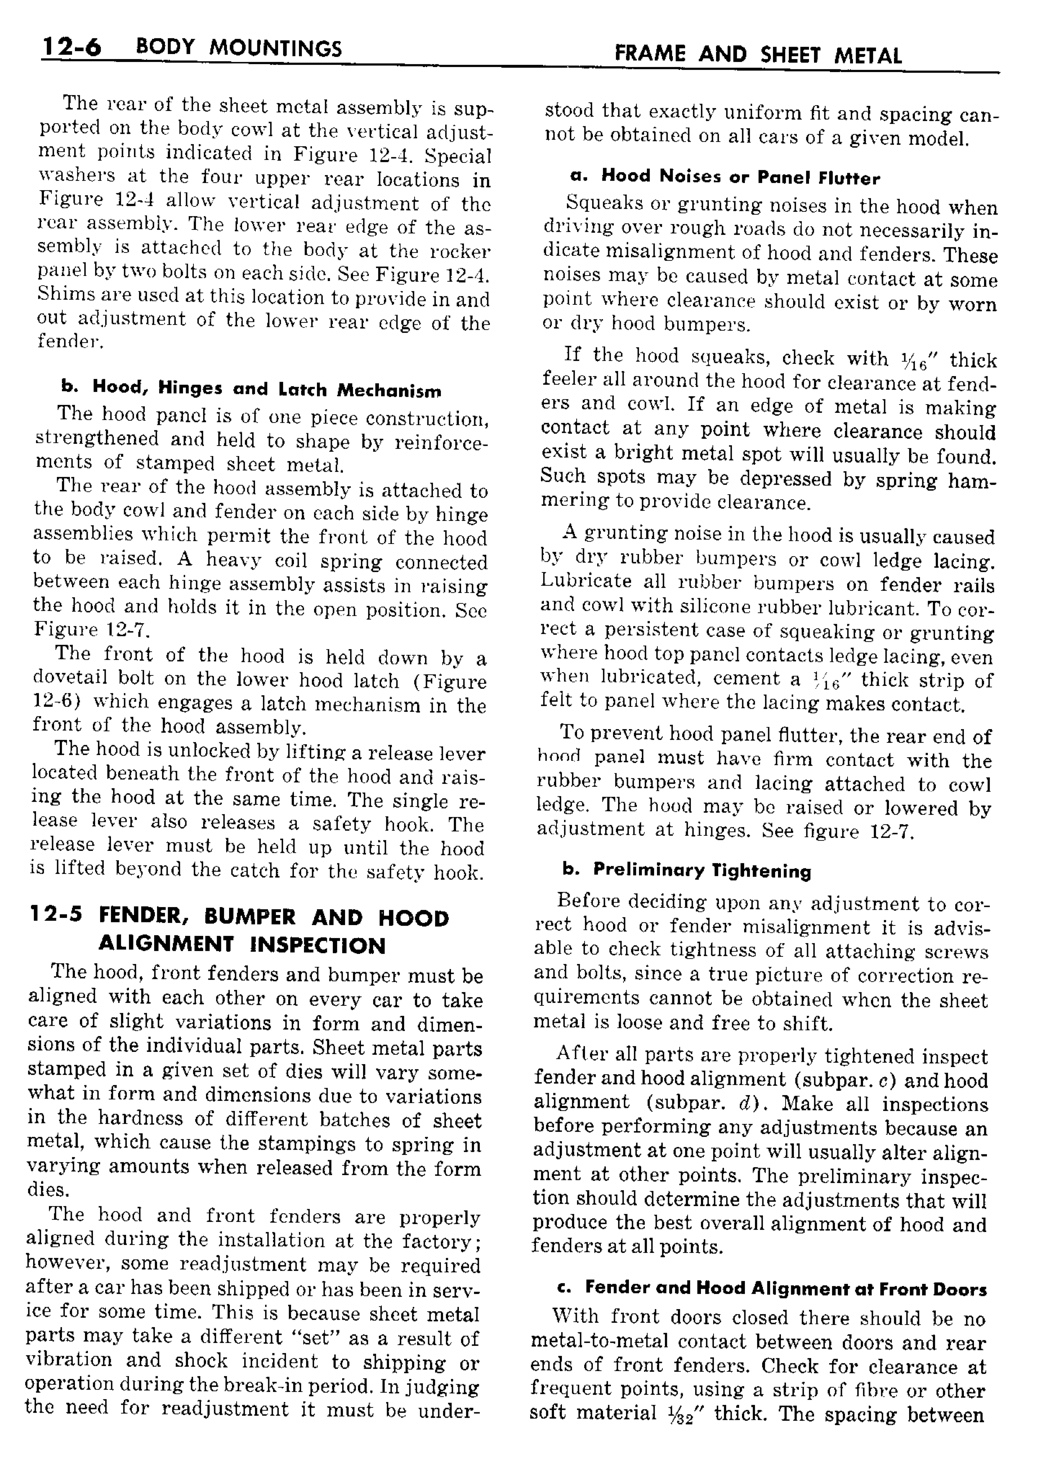 n_13 1960 Buick Shop Manual - Frame & Sheet Metal-006-006.jpg